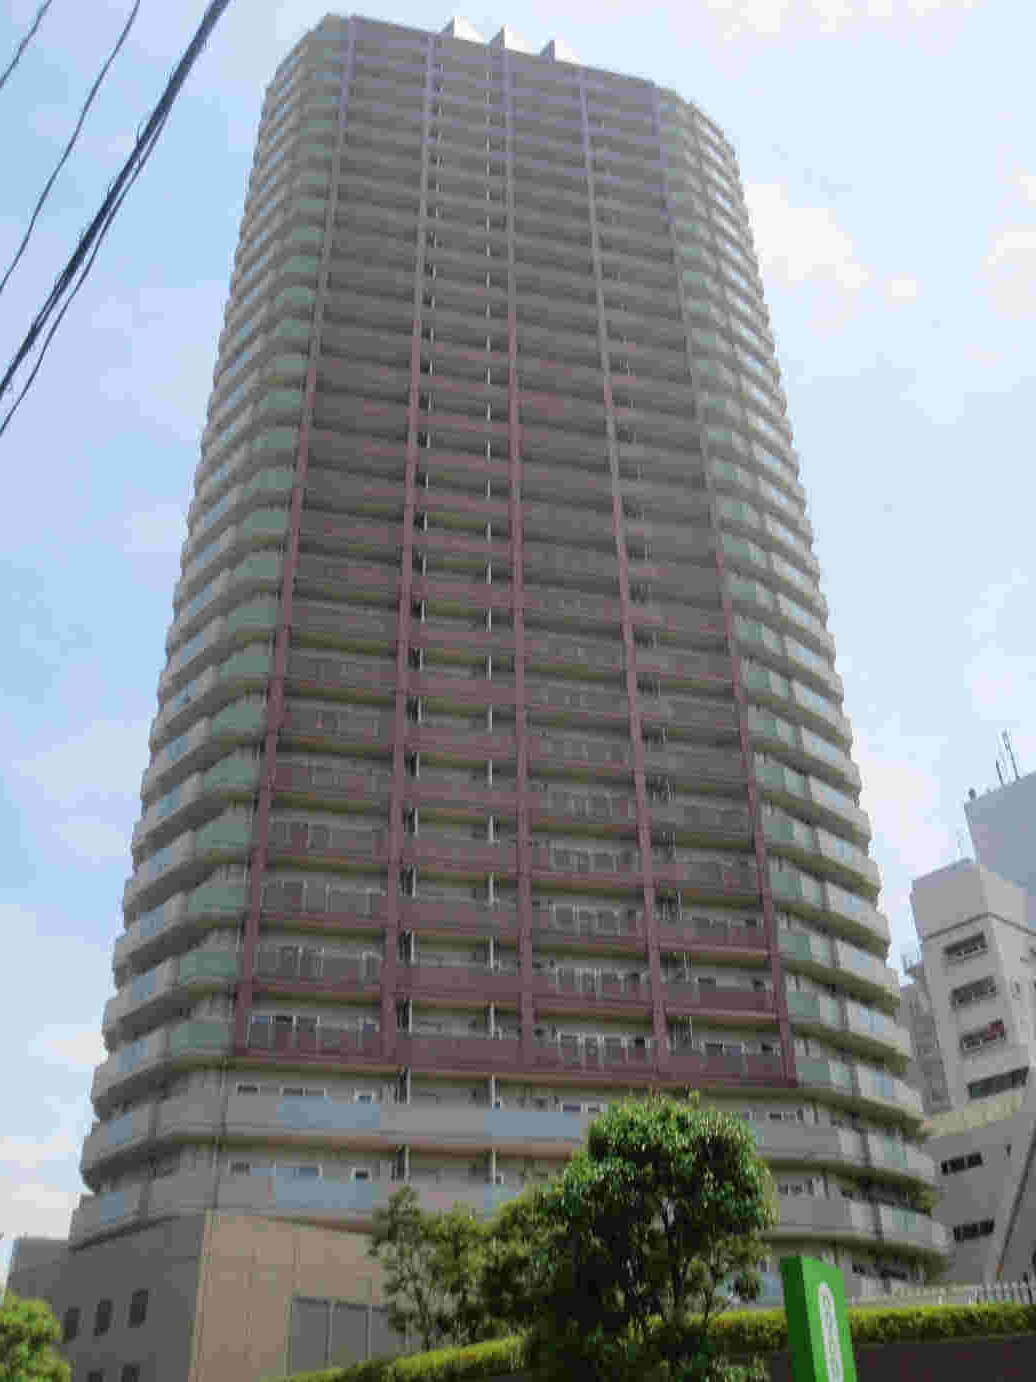 ローレルコート新宿タワー